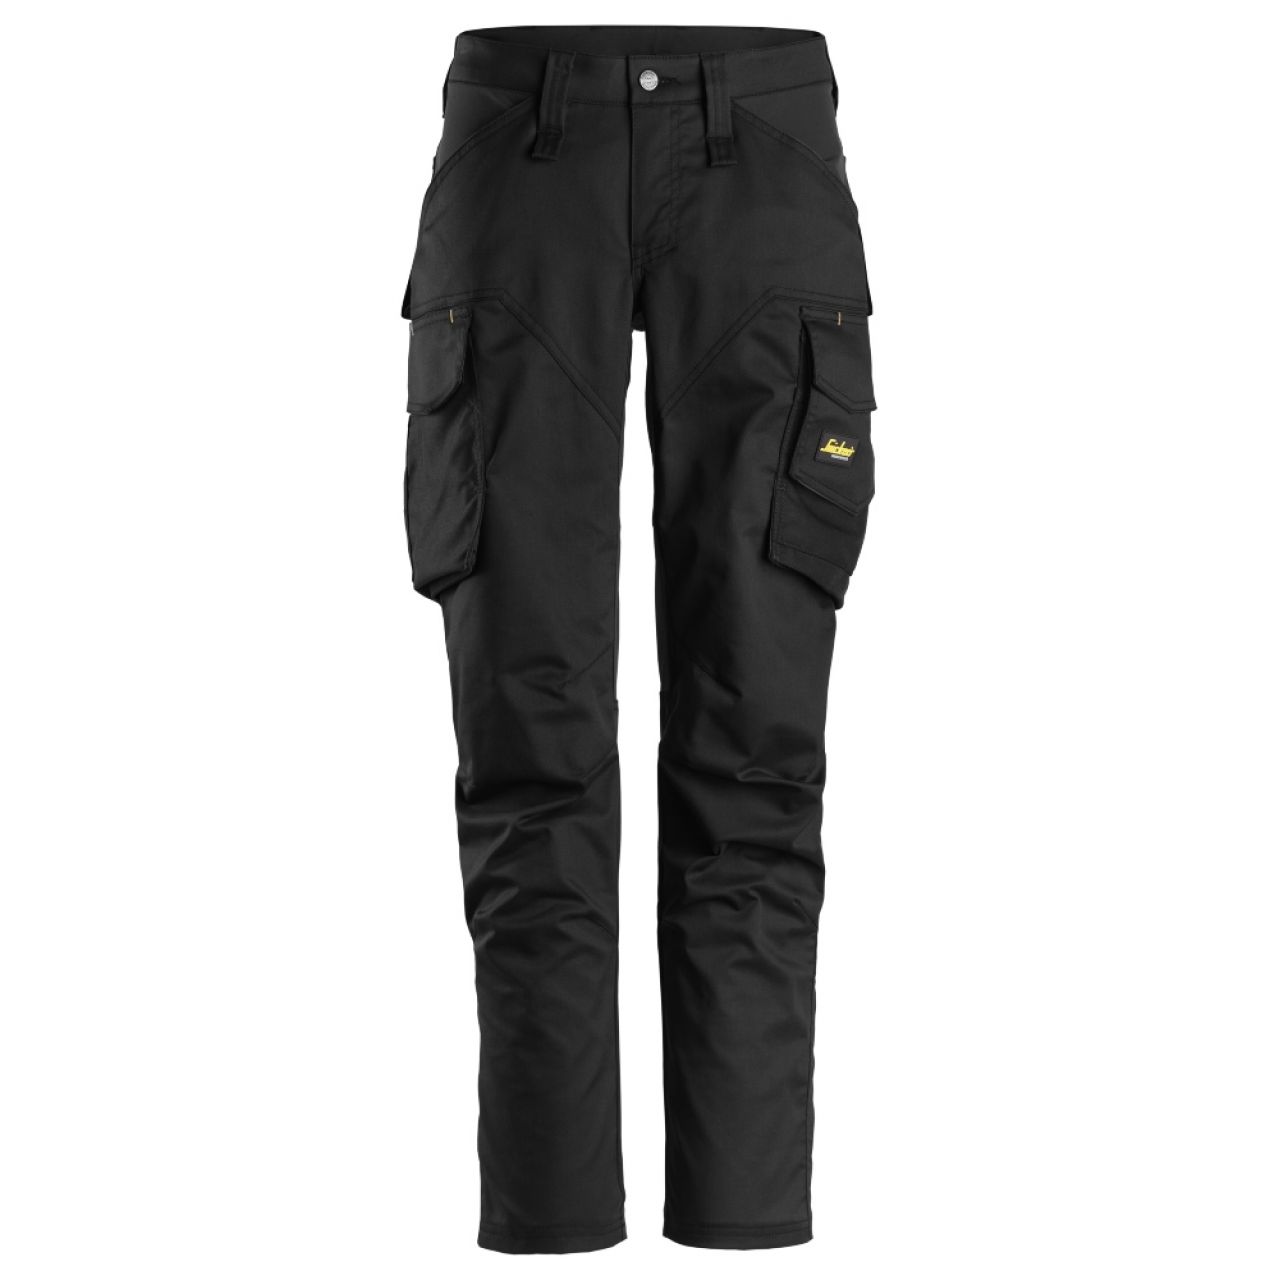 6703 Pantalones largos de trabajo elásticos para mujer con bolsillos para rodilleras AllroundWork negro talla 20